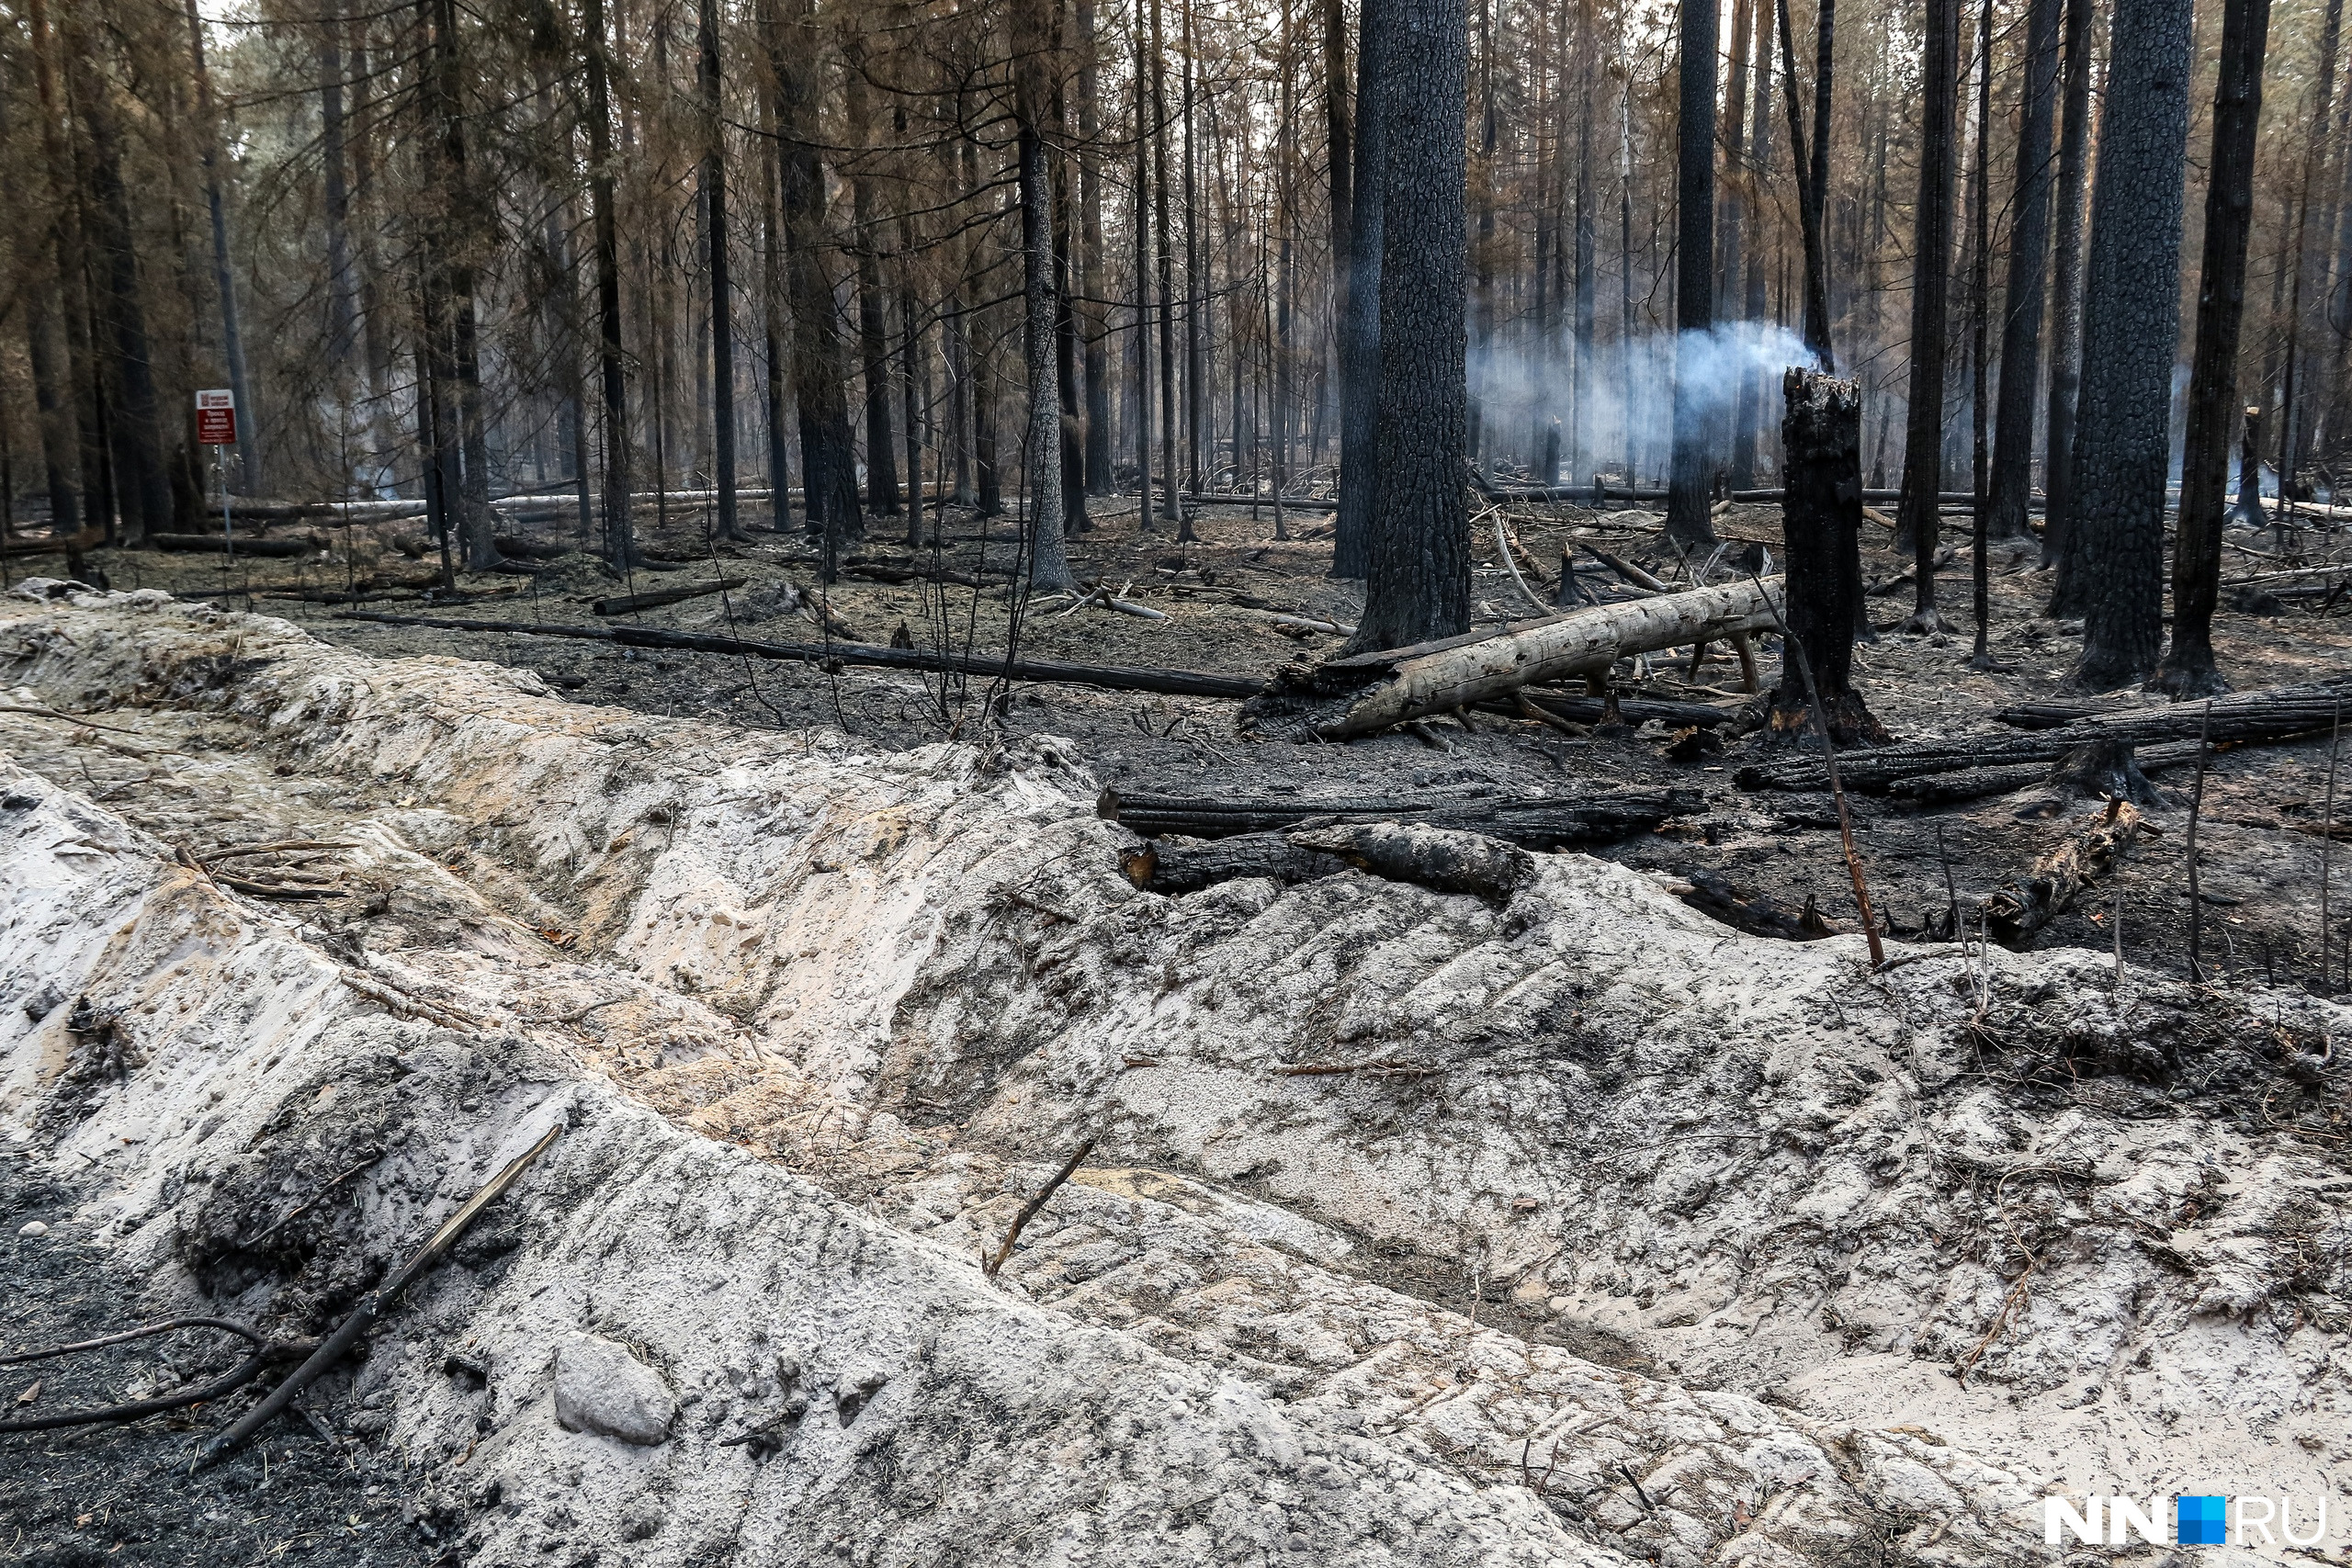 Противопожарные рвы (минерализованный полосы) — один из главных способов борьбы с лесными пожарами